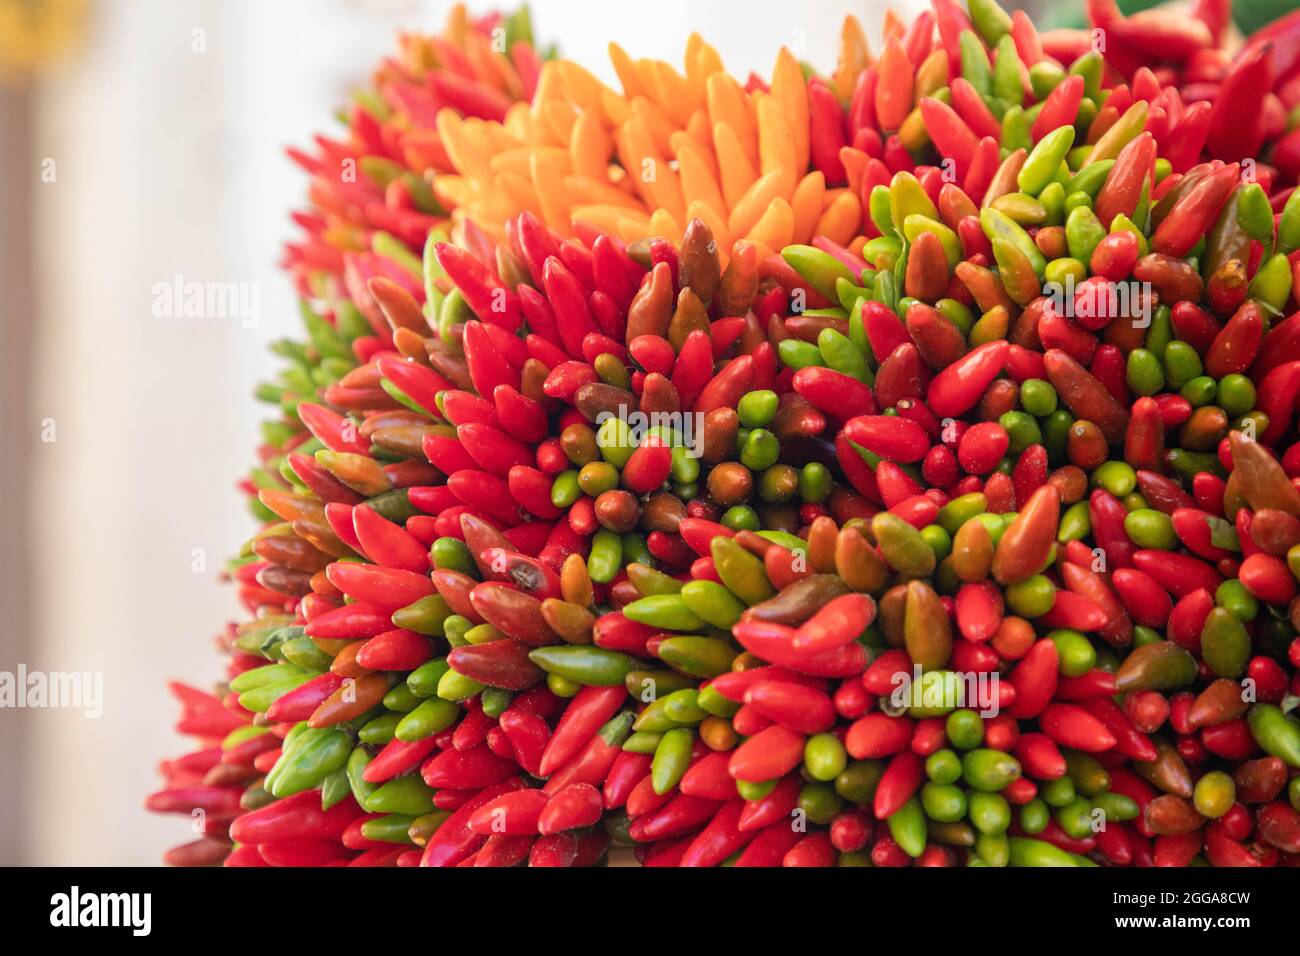 Peperoncino piccante di vari colori- ingredienti e spezie naturali biologiche Stock Photo